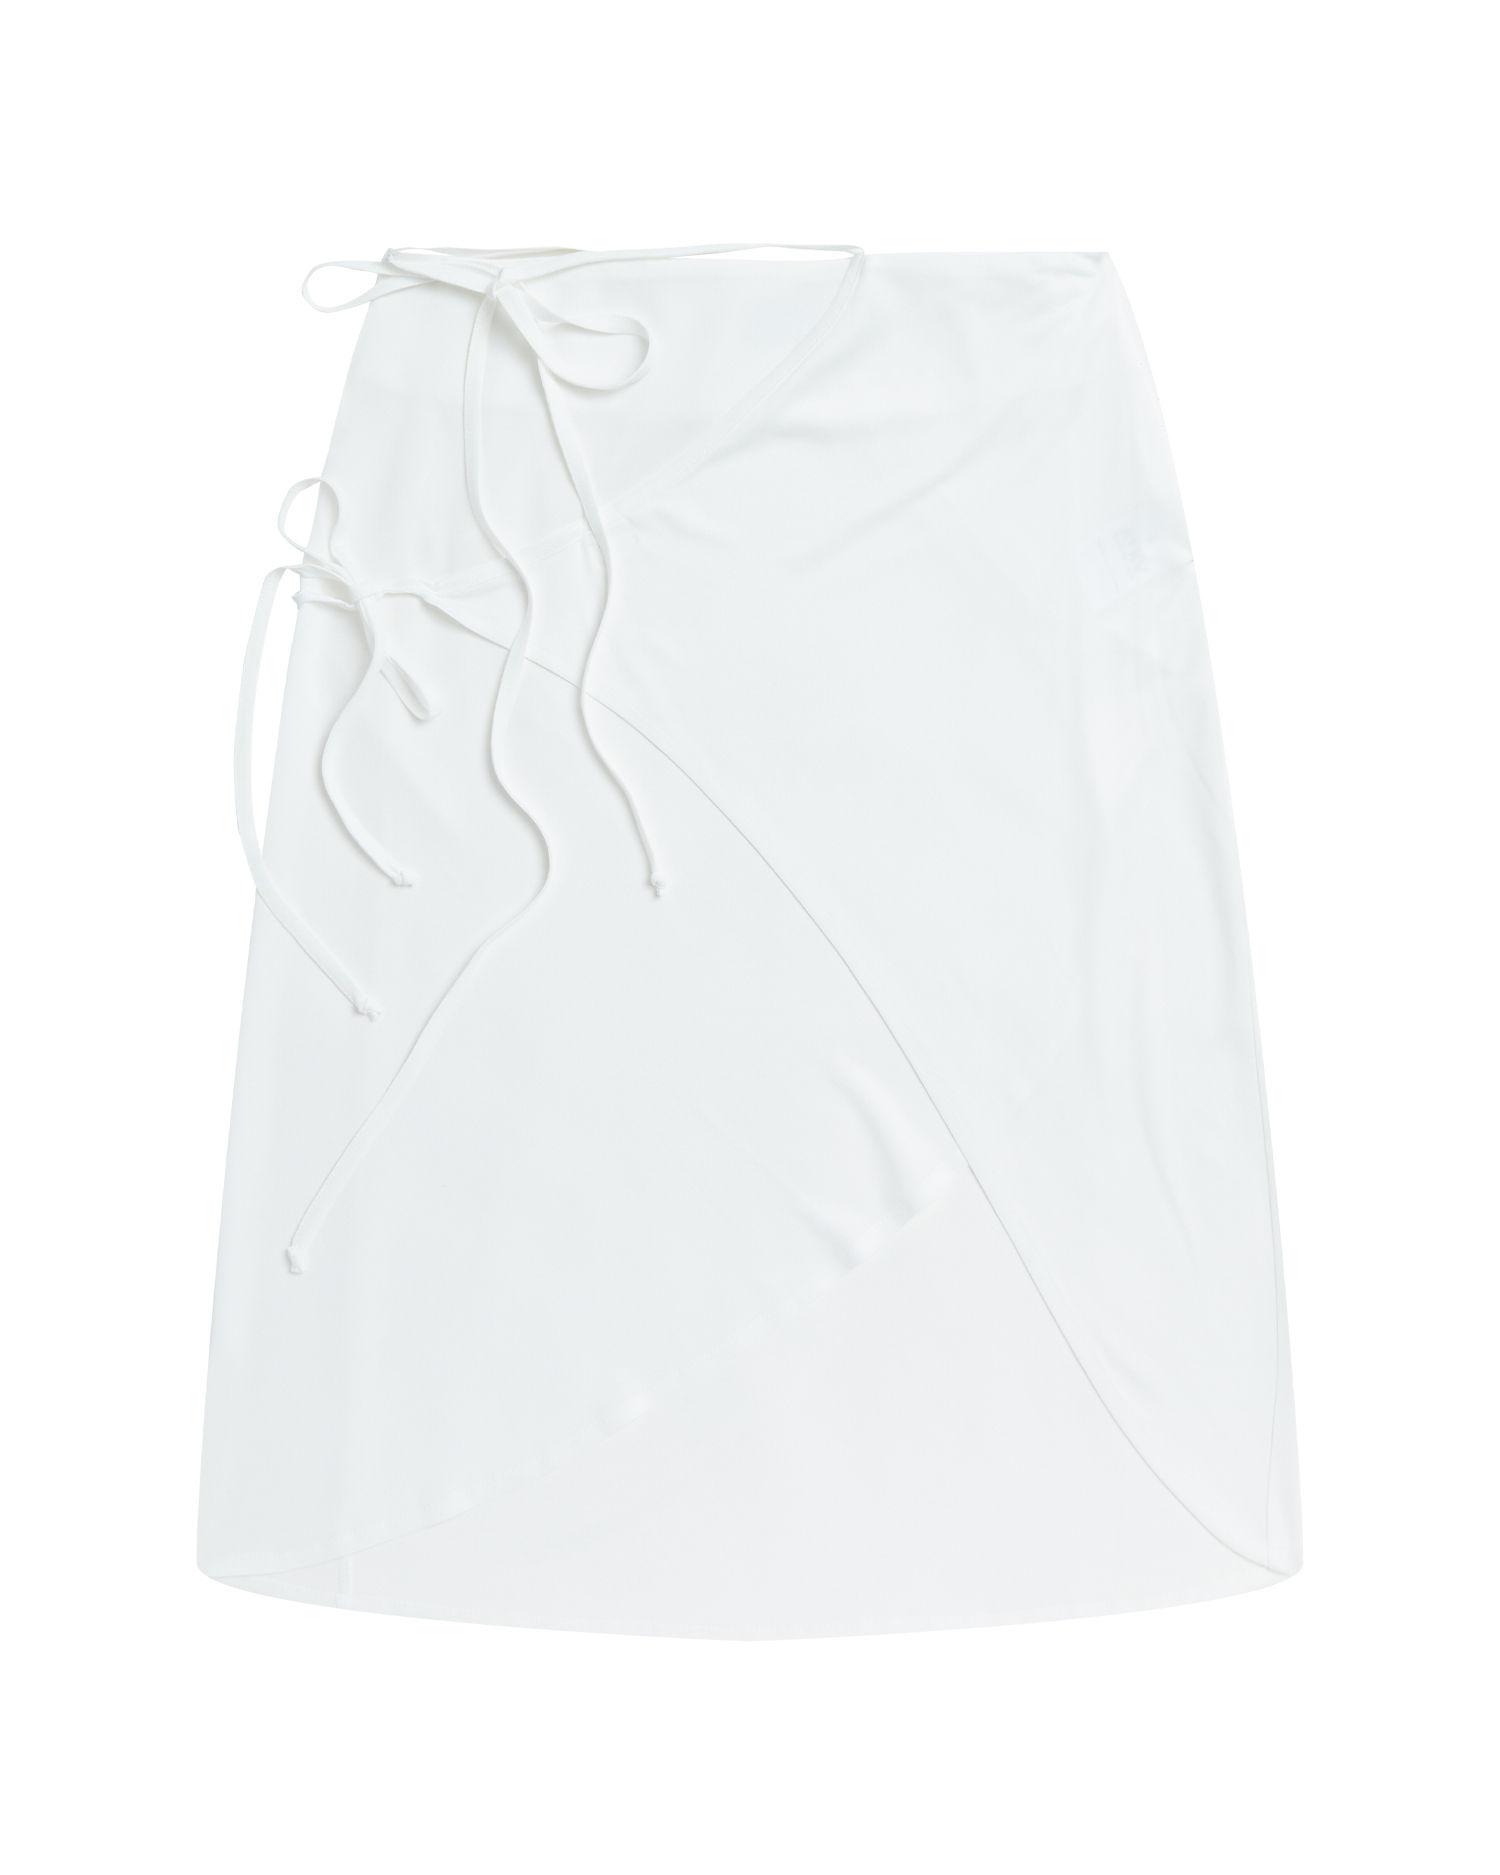 A-line wrap skirt by ATXV